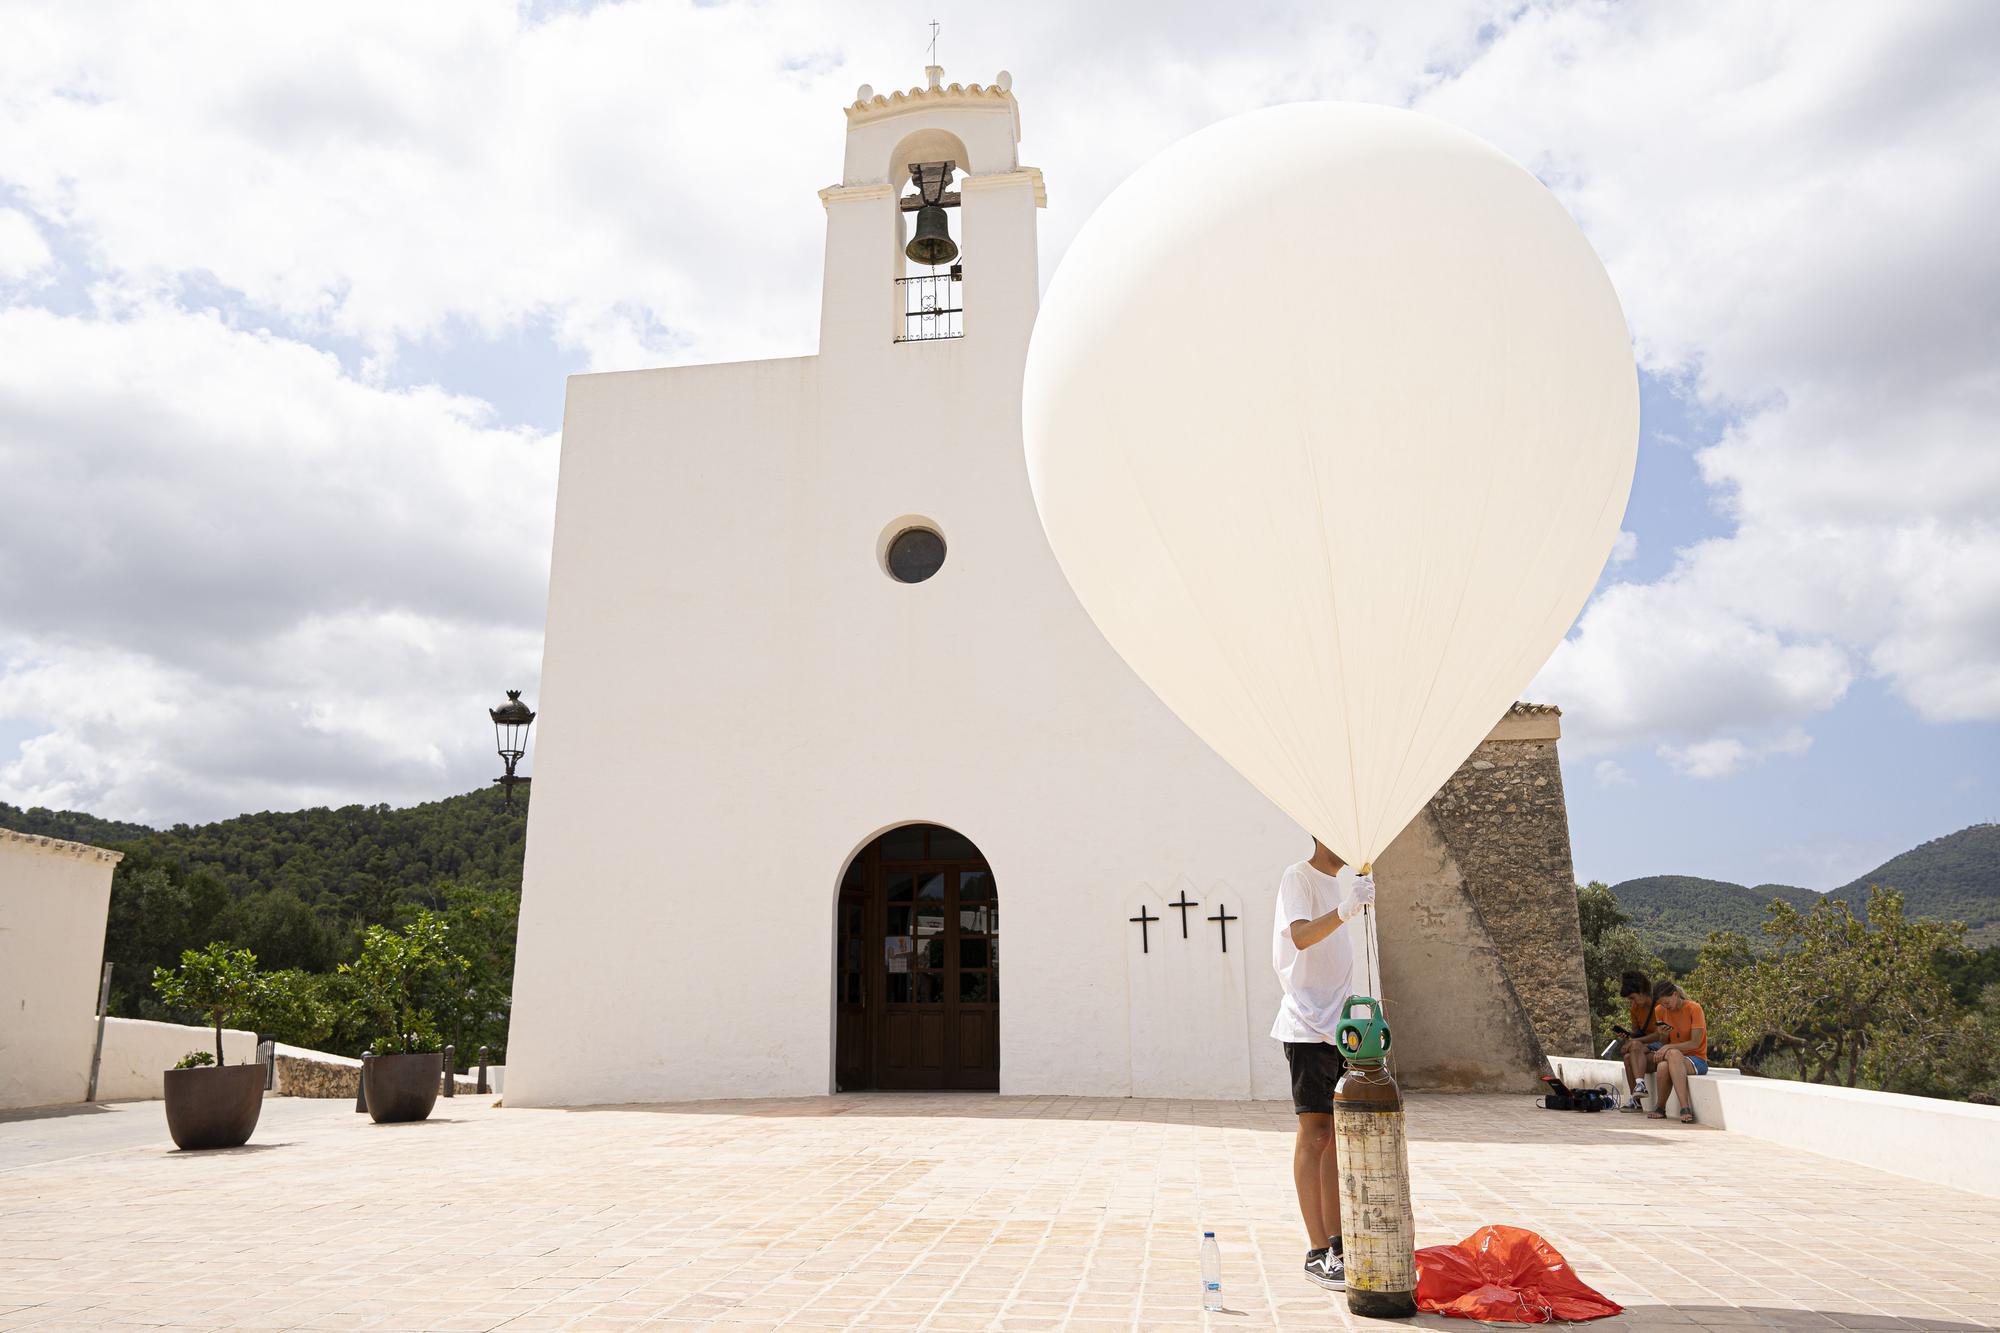 Lanzan a la atmósfera un nano satélite que recogerá muestras ambientales en Ibiza.